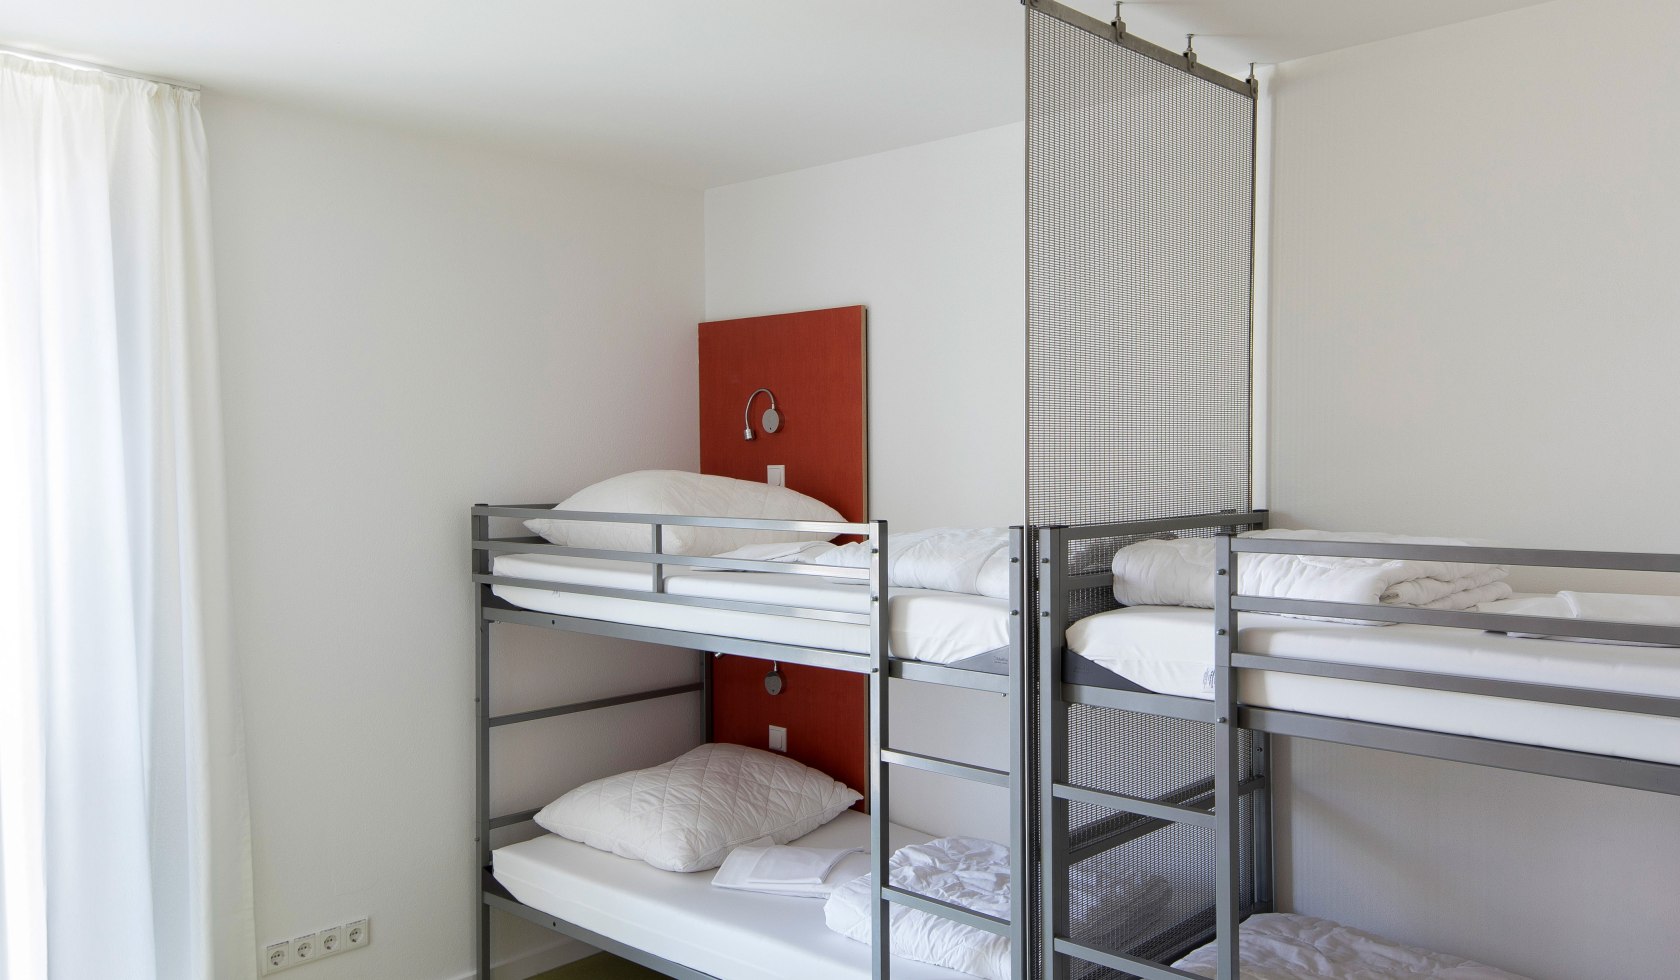 4-Bett-Zimmer, © Stadt Wolfenbüttel, Christian Bierwagen